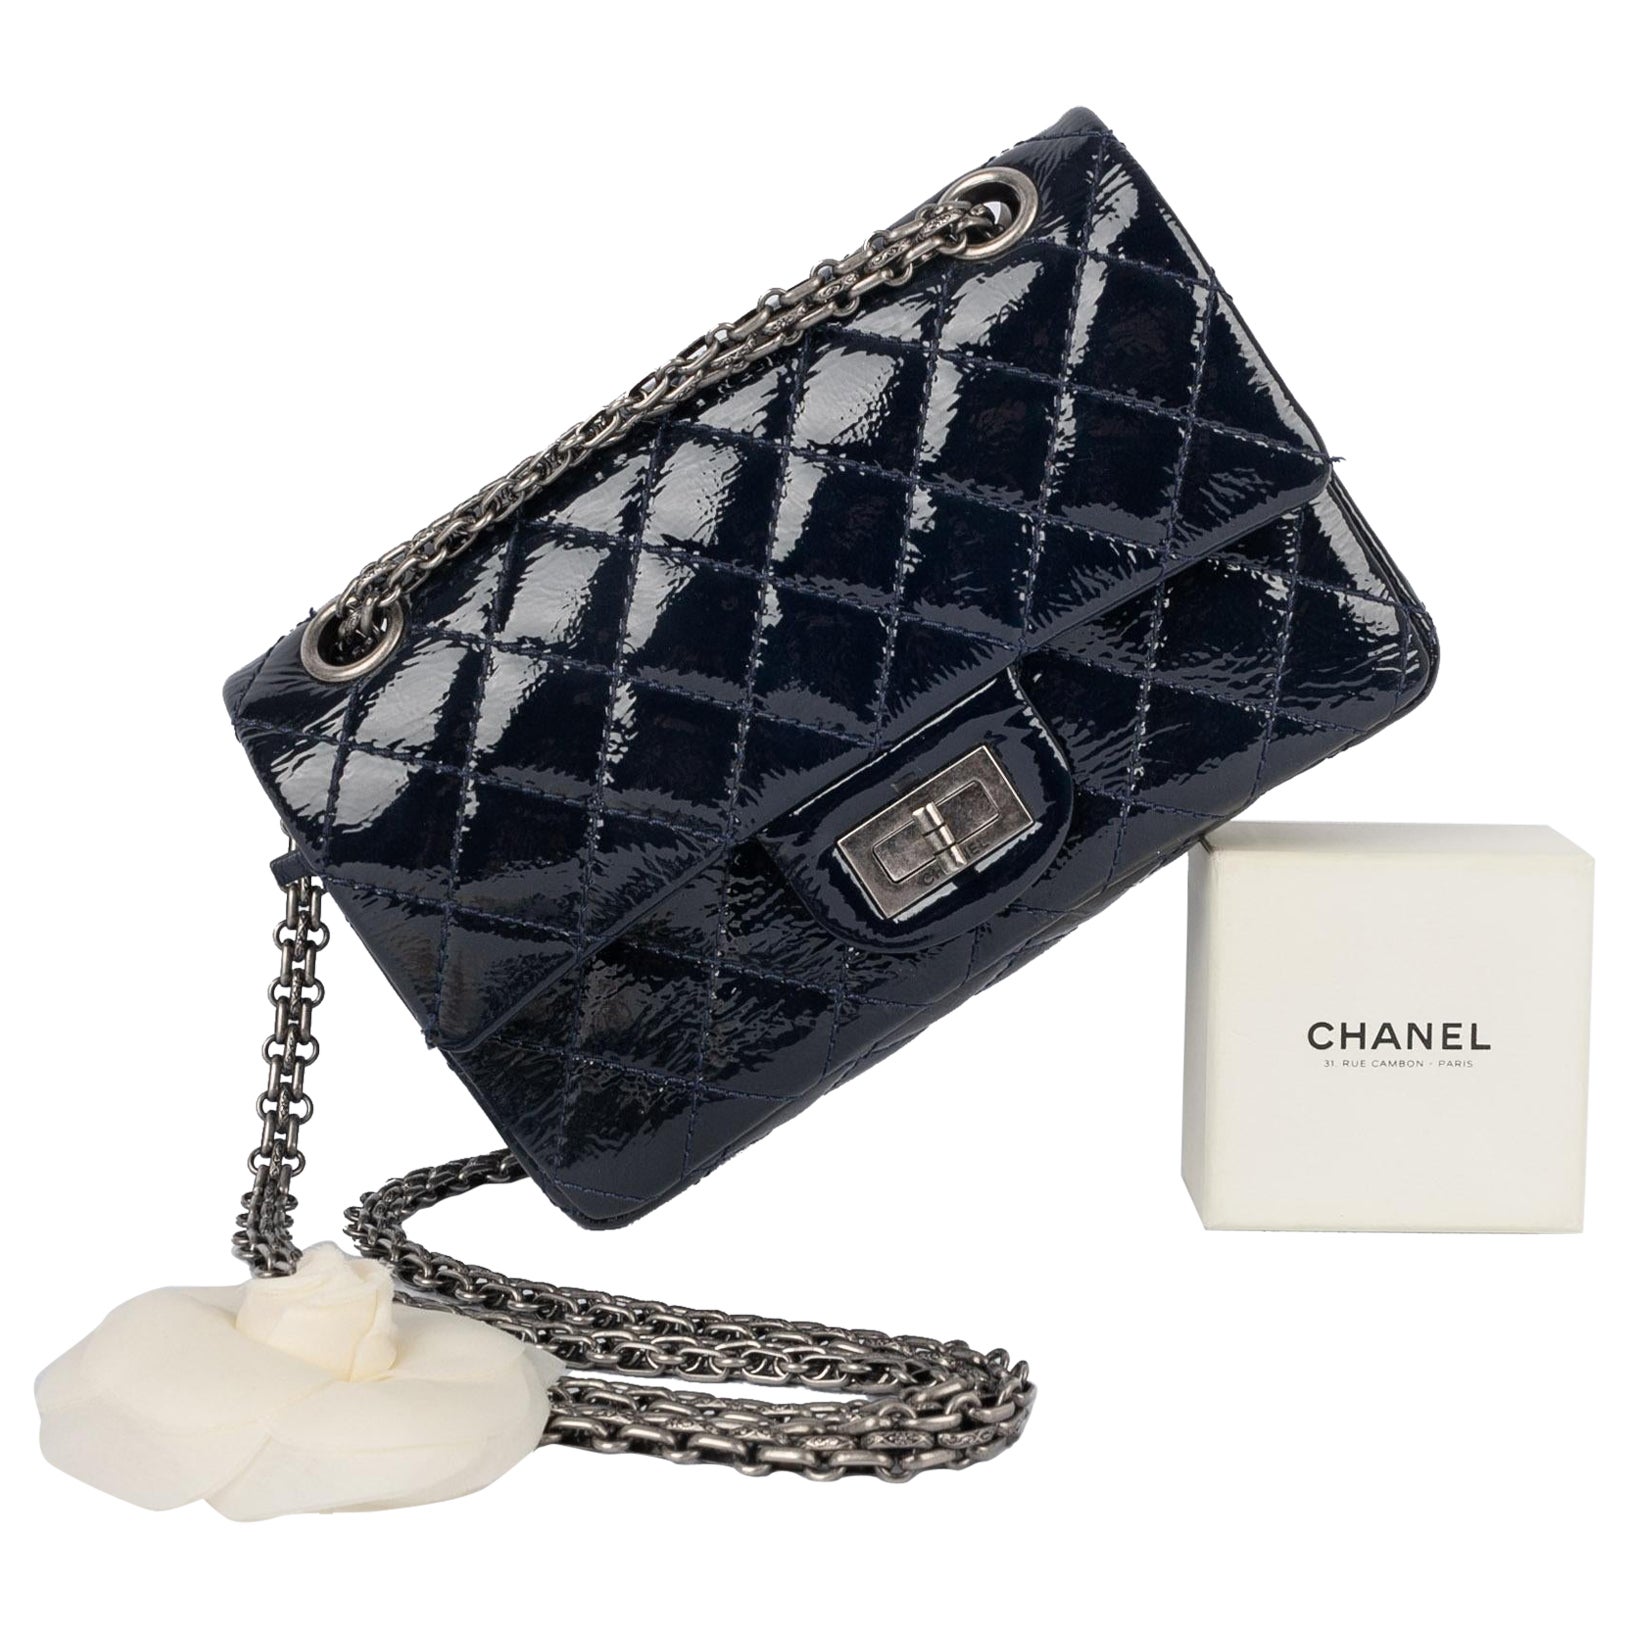 Chanel 2.55 bag 2010/2011